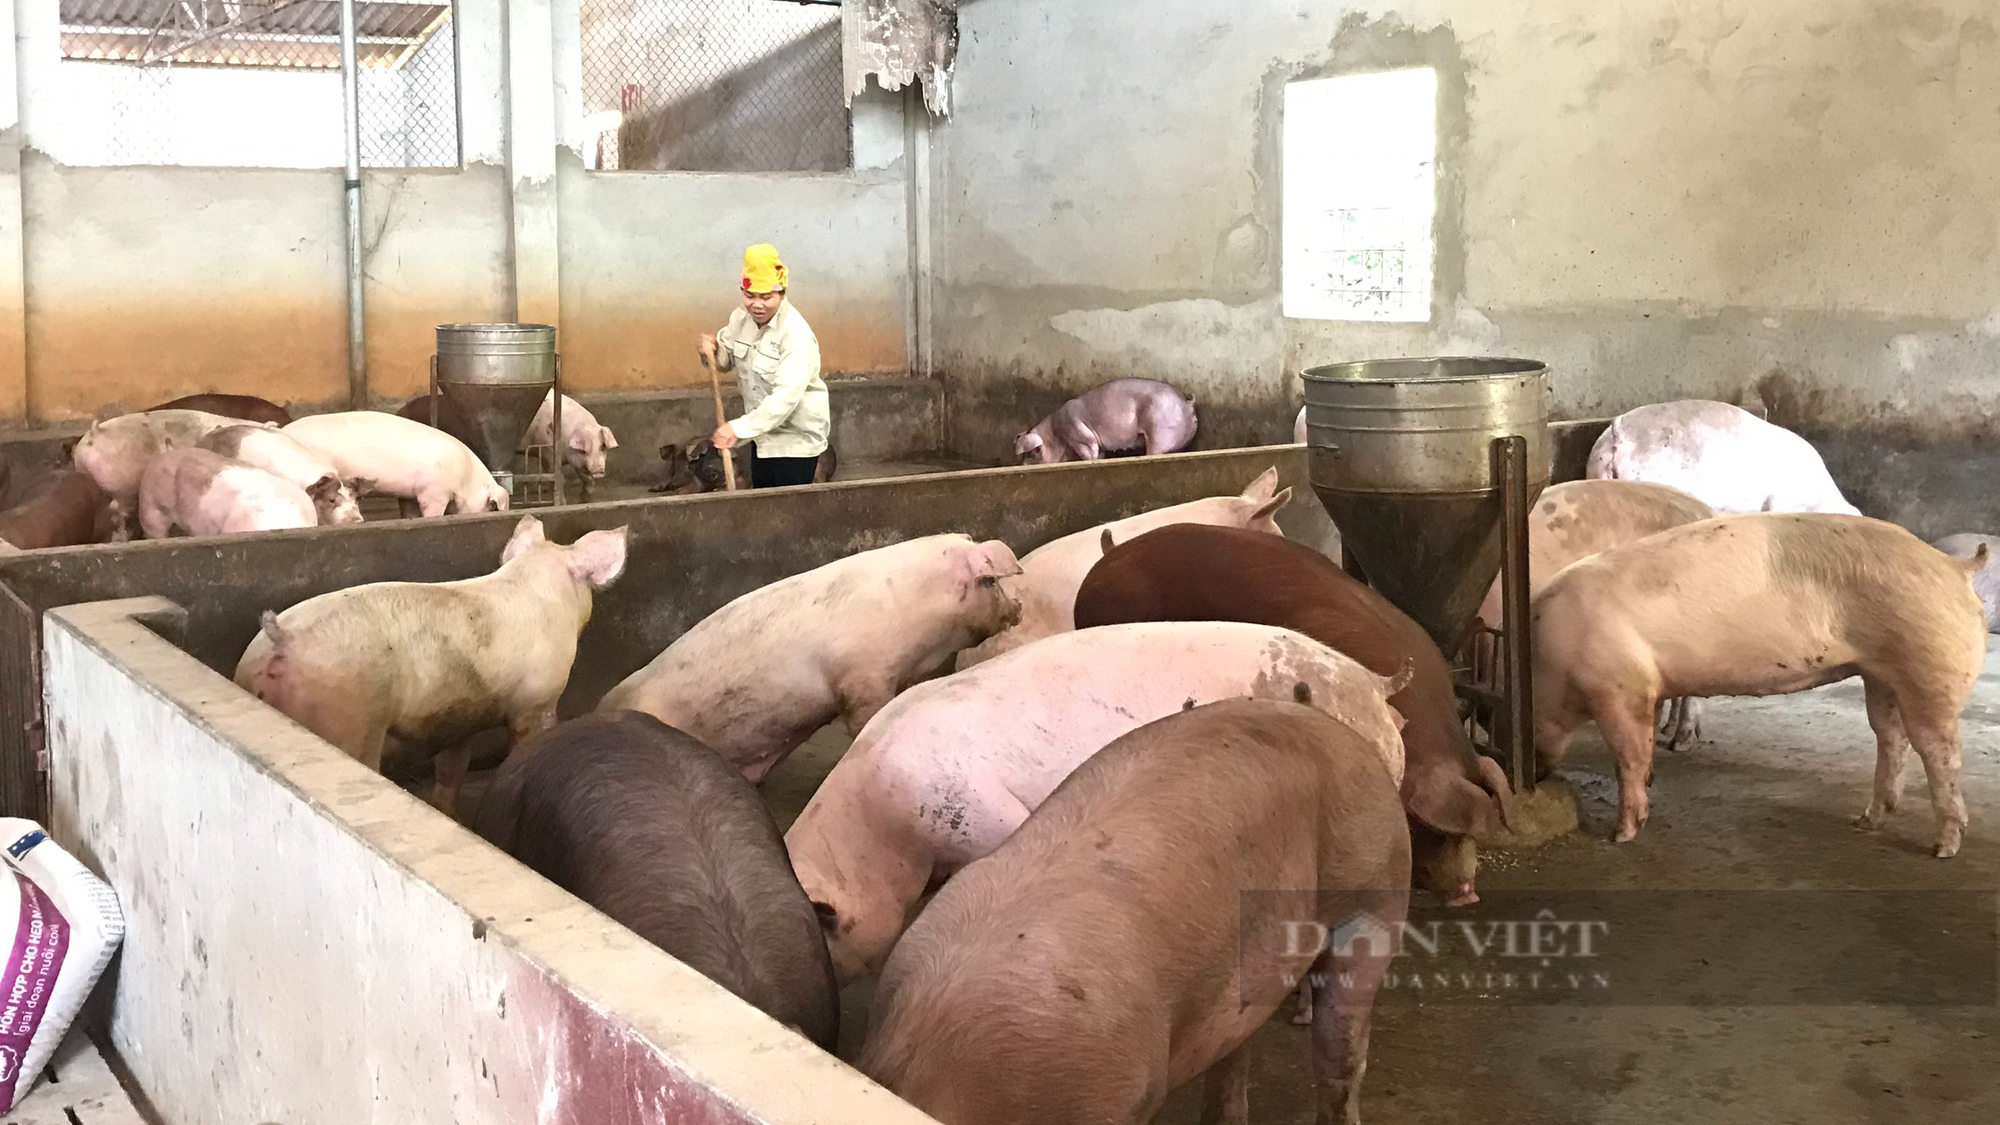 Lão nông nuôi lợn khép kín trên nương cà phê thu nửa tỷ mỗi năm - Ảnh 7.